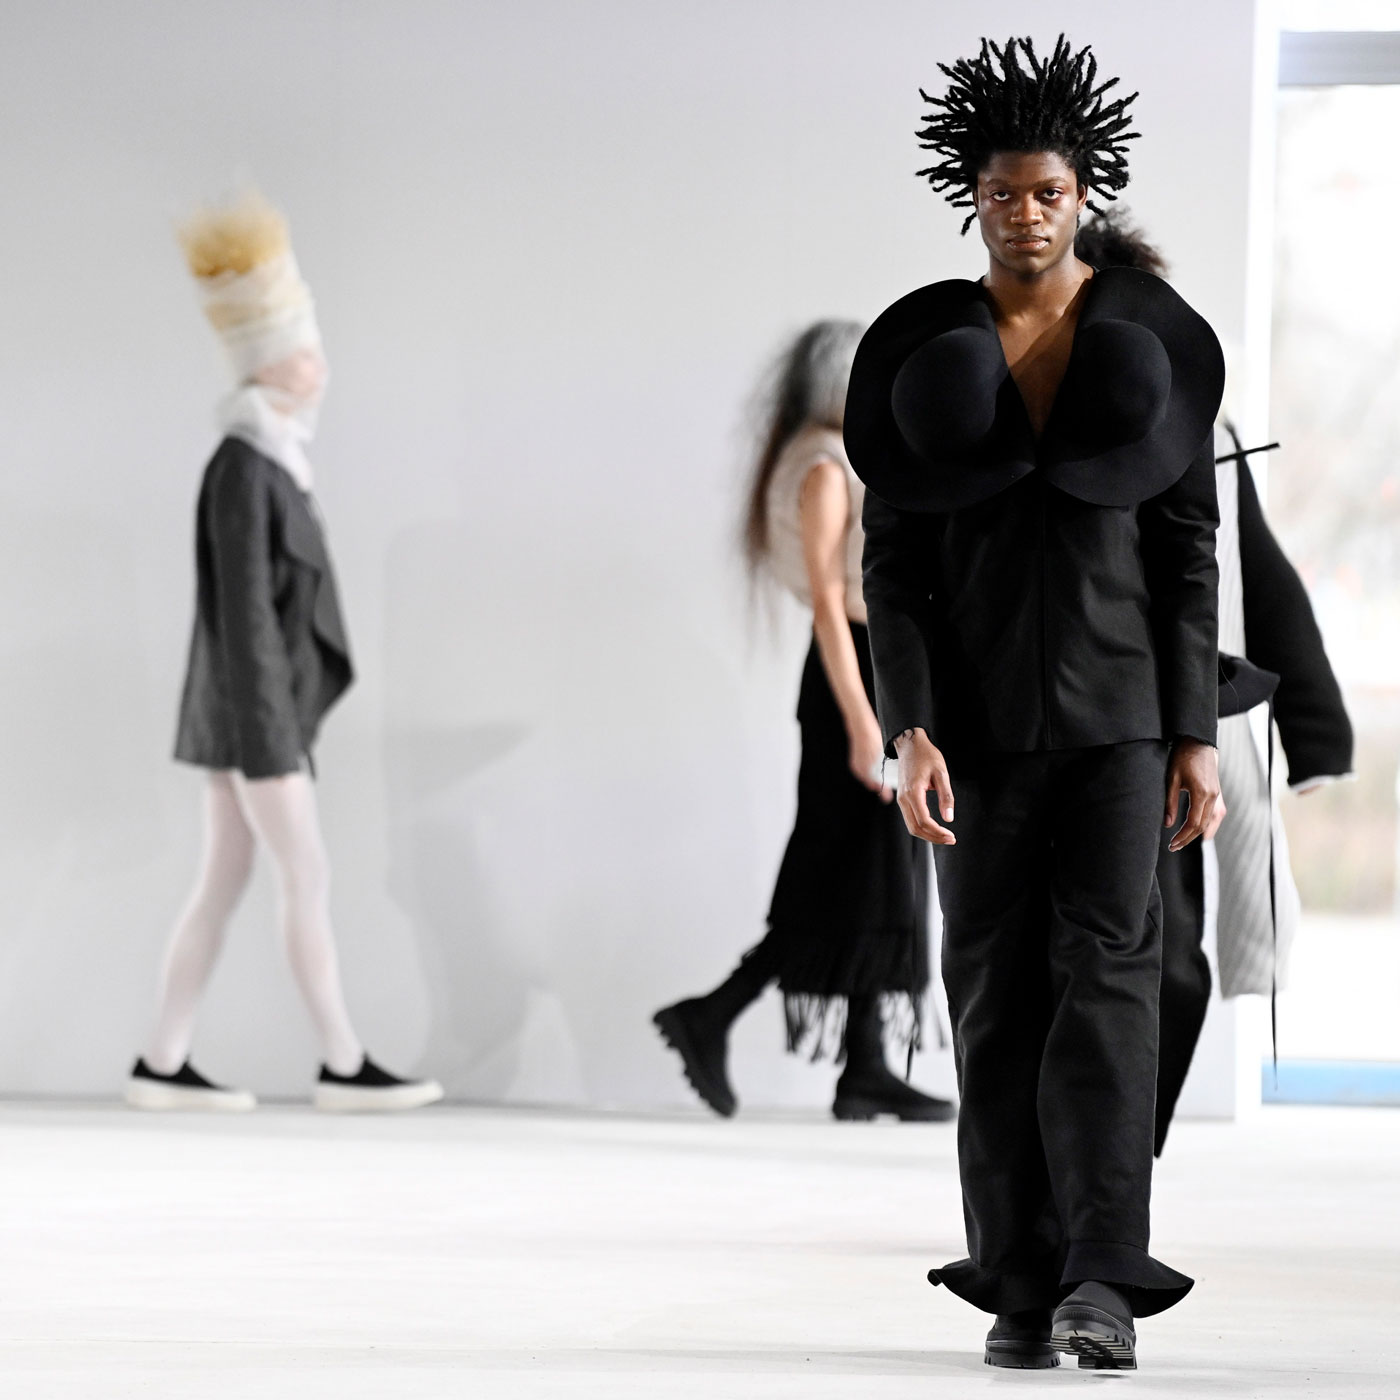 Mode: Braucht Berlin die Fashion Week?